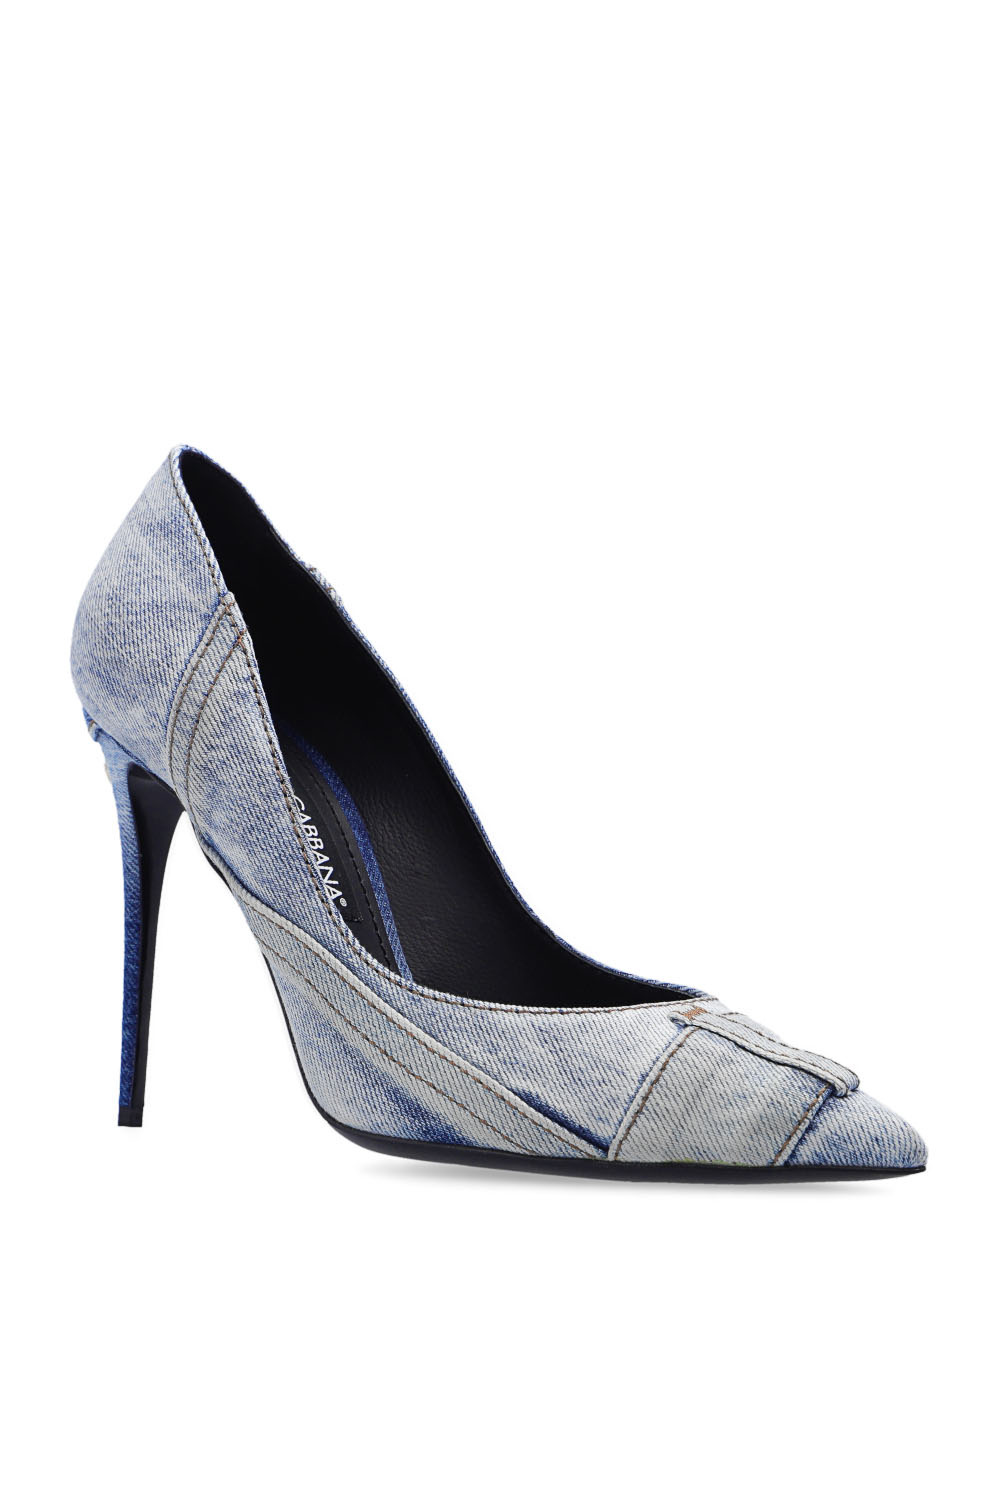 Dolce & Gabbana crystal-embellished platform sandals ‘Cardinale’ pumps